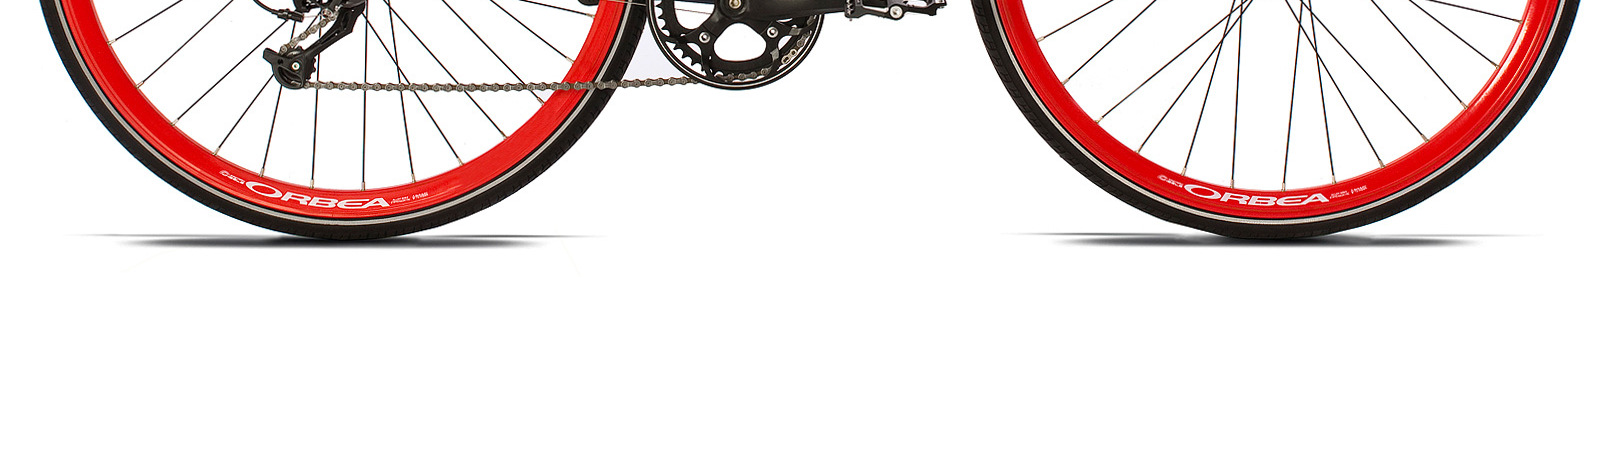 6.Bicicleta plegable modelo CARPE H30 de Orbea. Para más información: http://www.orbea.